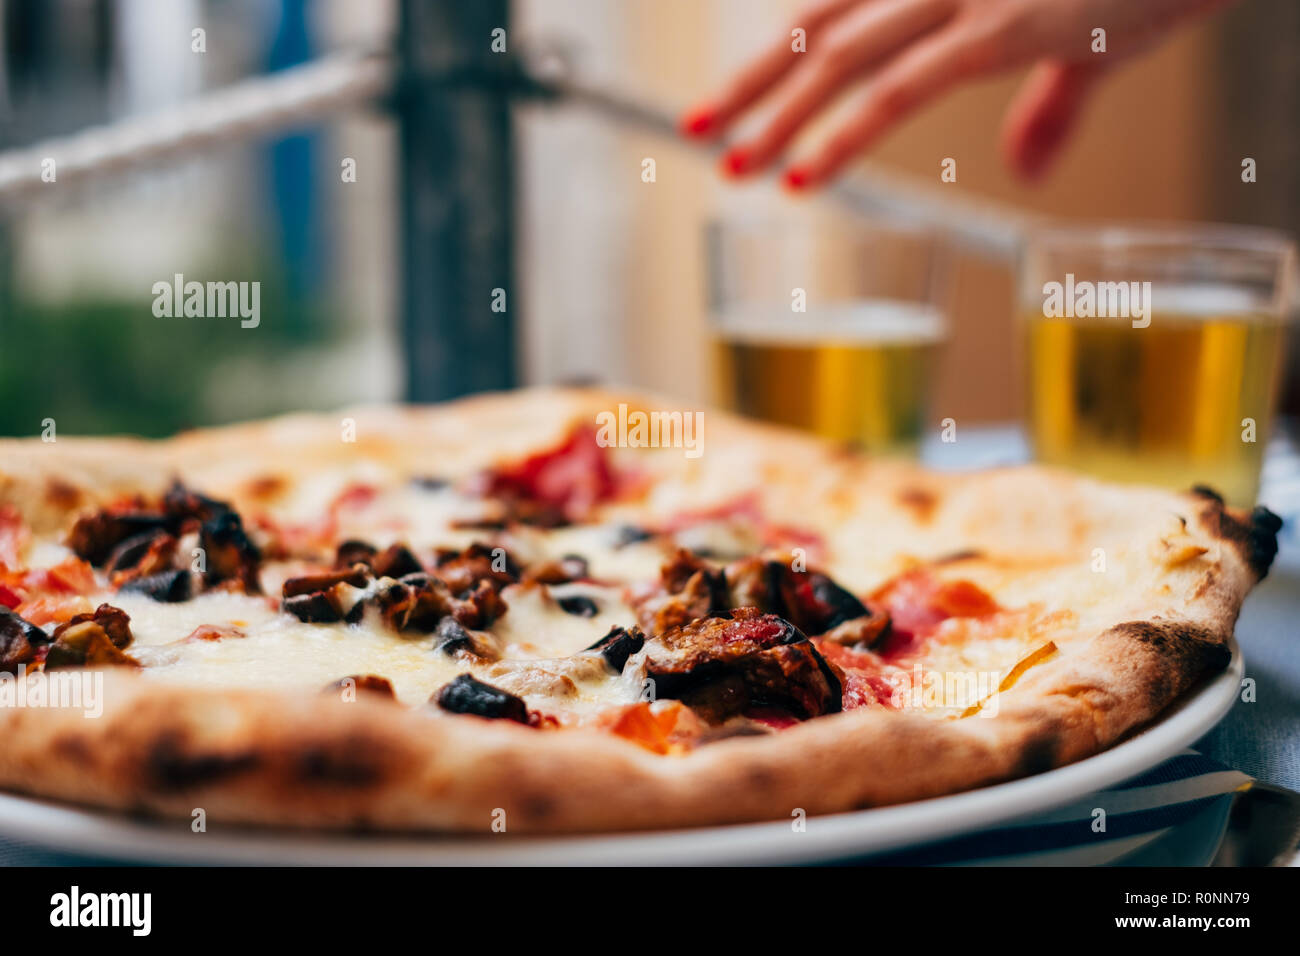 Pizza de berenjenas sobre una mesa y una mano de mujer alcanzando una cerveza Foto de stock